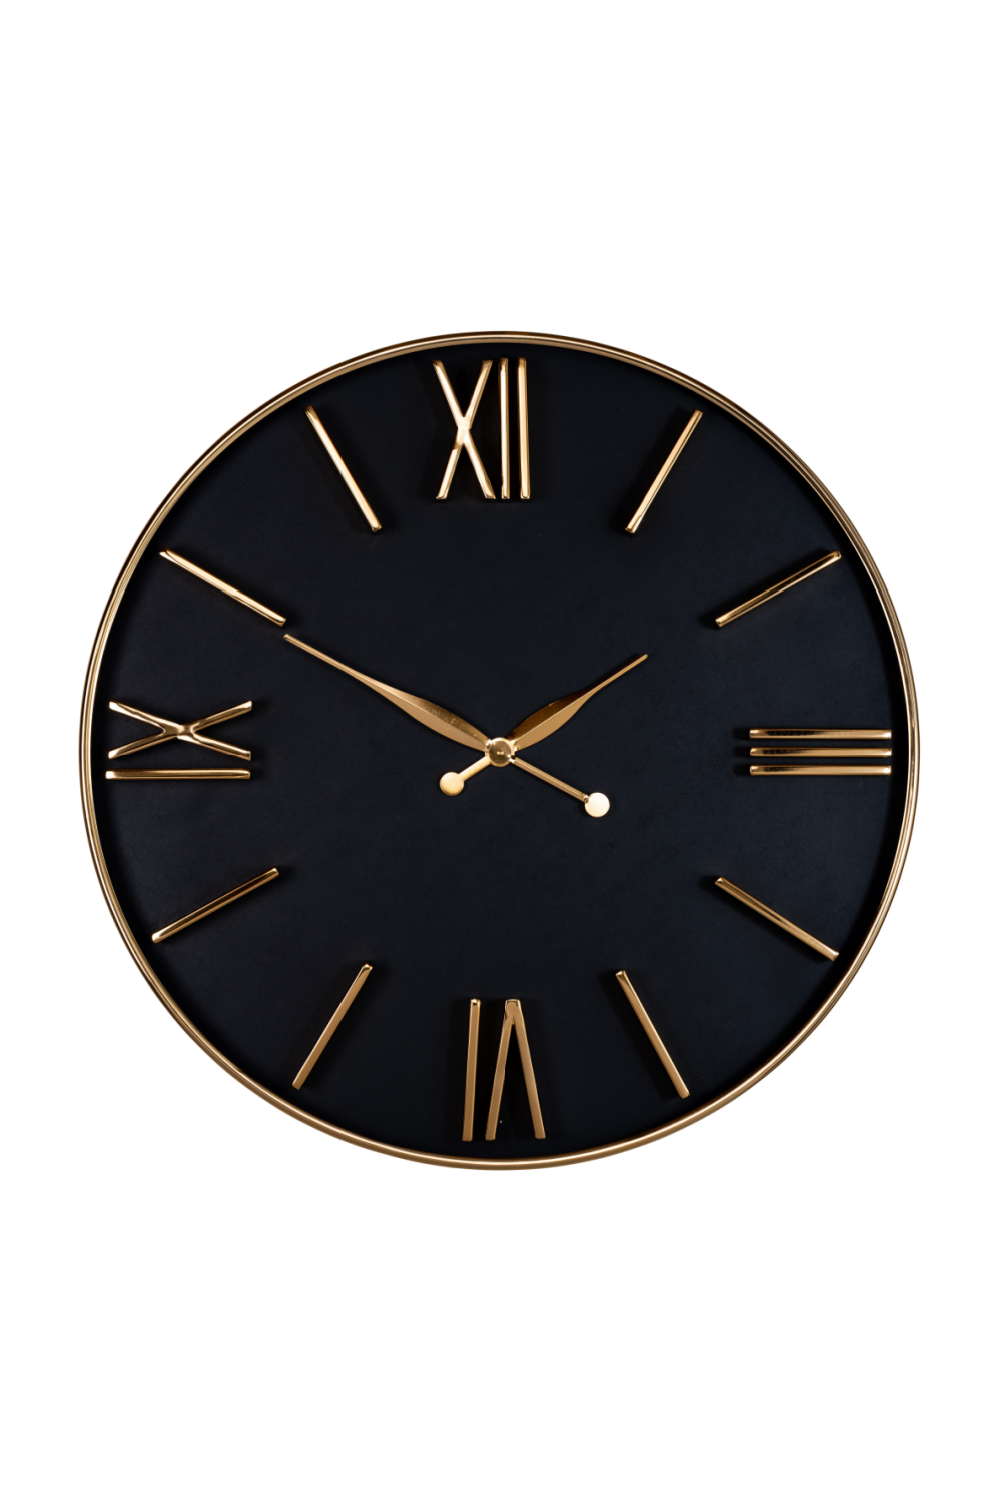 Gold Framed Black Dial Clock | OROA Lyem | Oroa.com